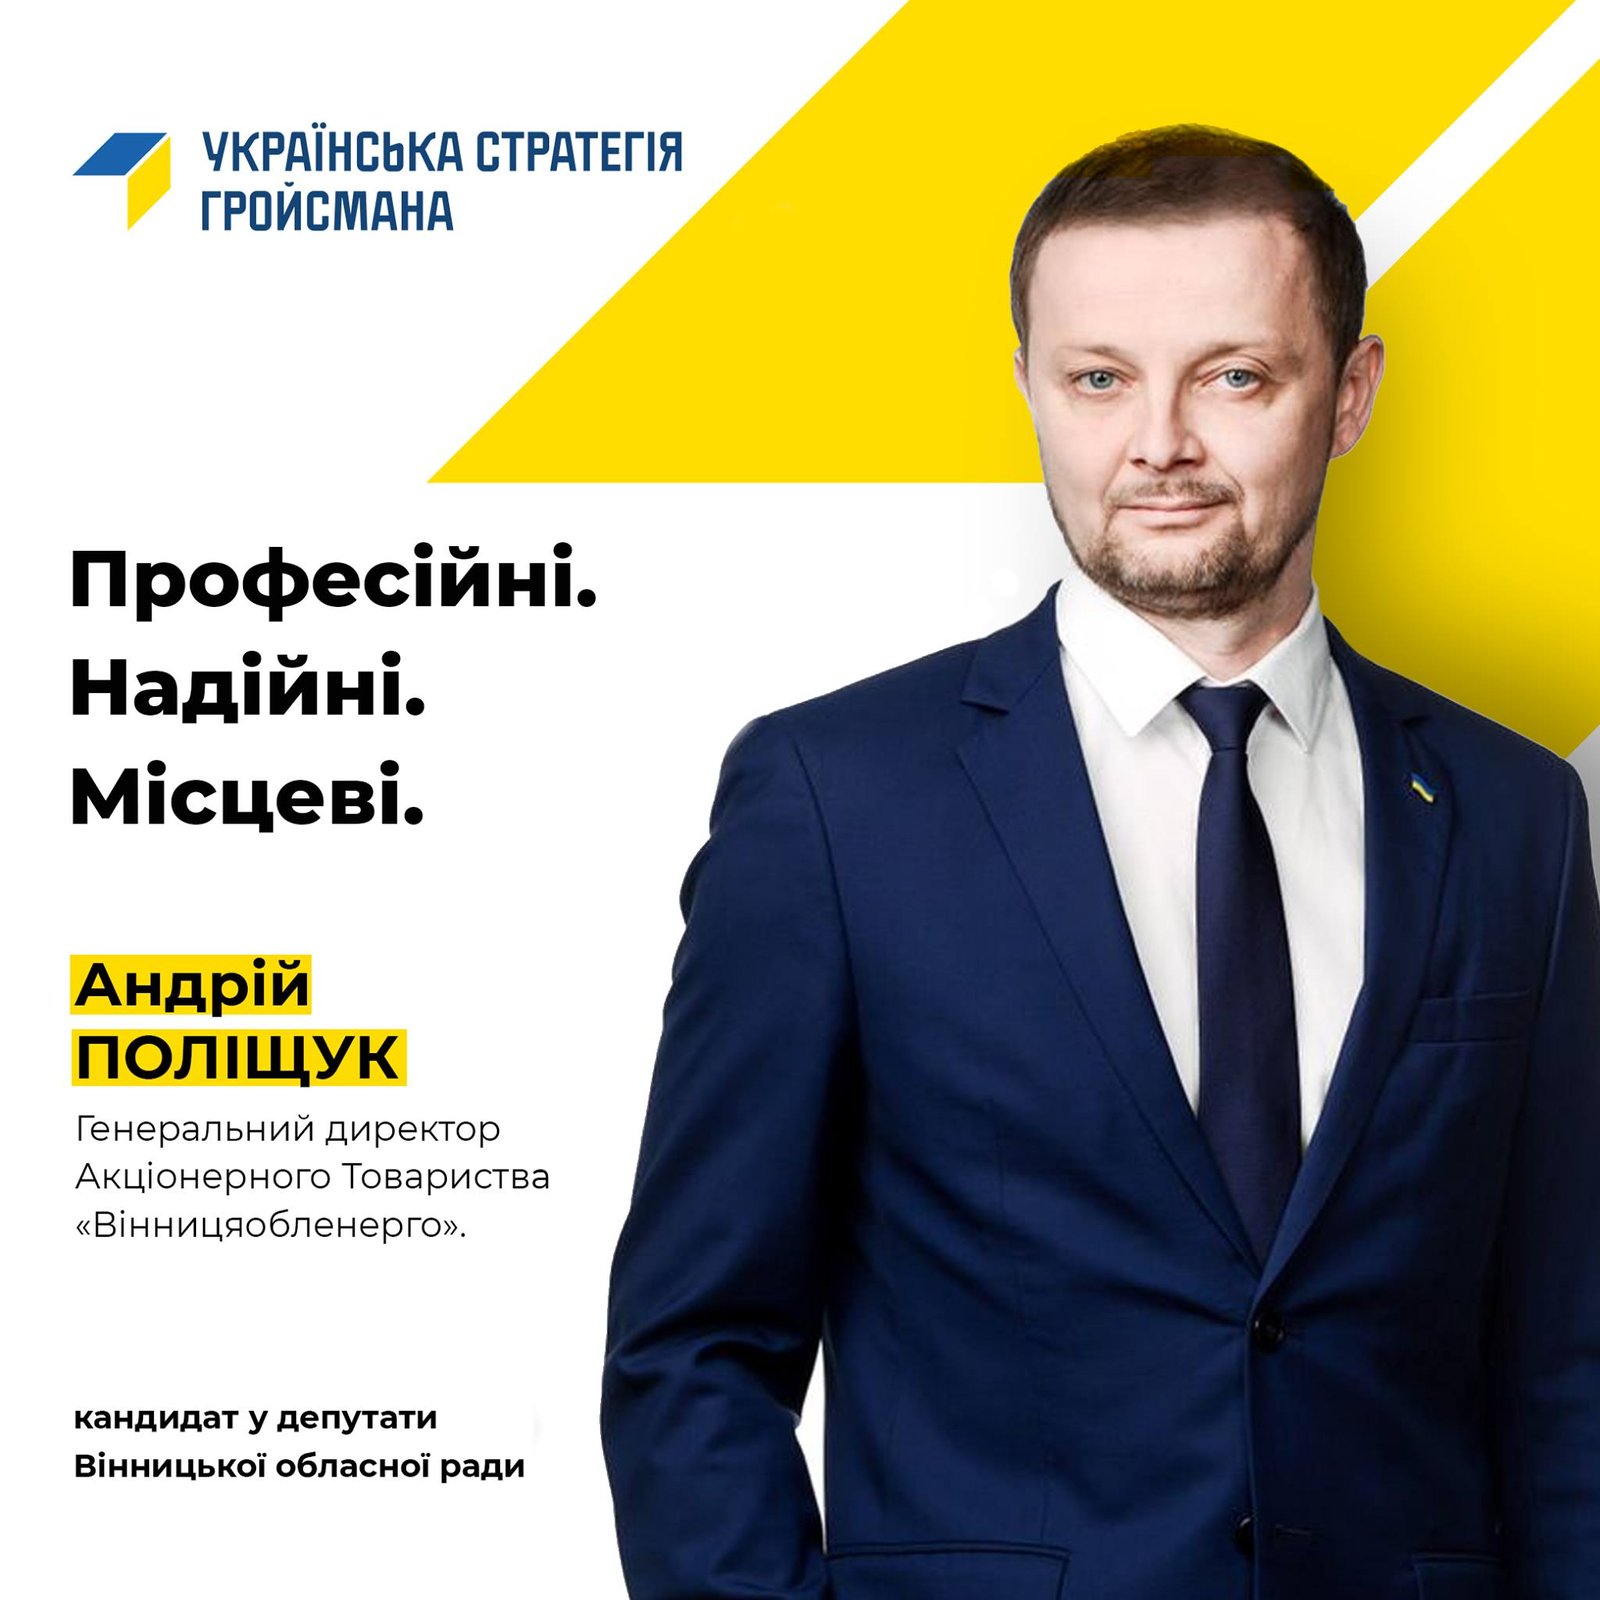 Андрій Поліщук був обраний депутатом Вінницької обласної ради на виборах 2020 року від партії "Українська стратегія "Гройсмана".